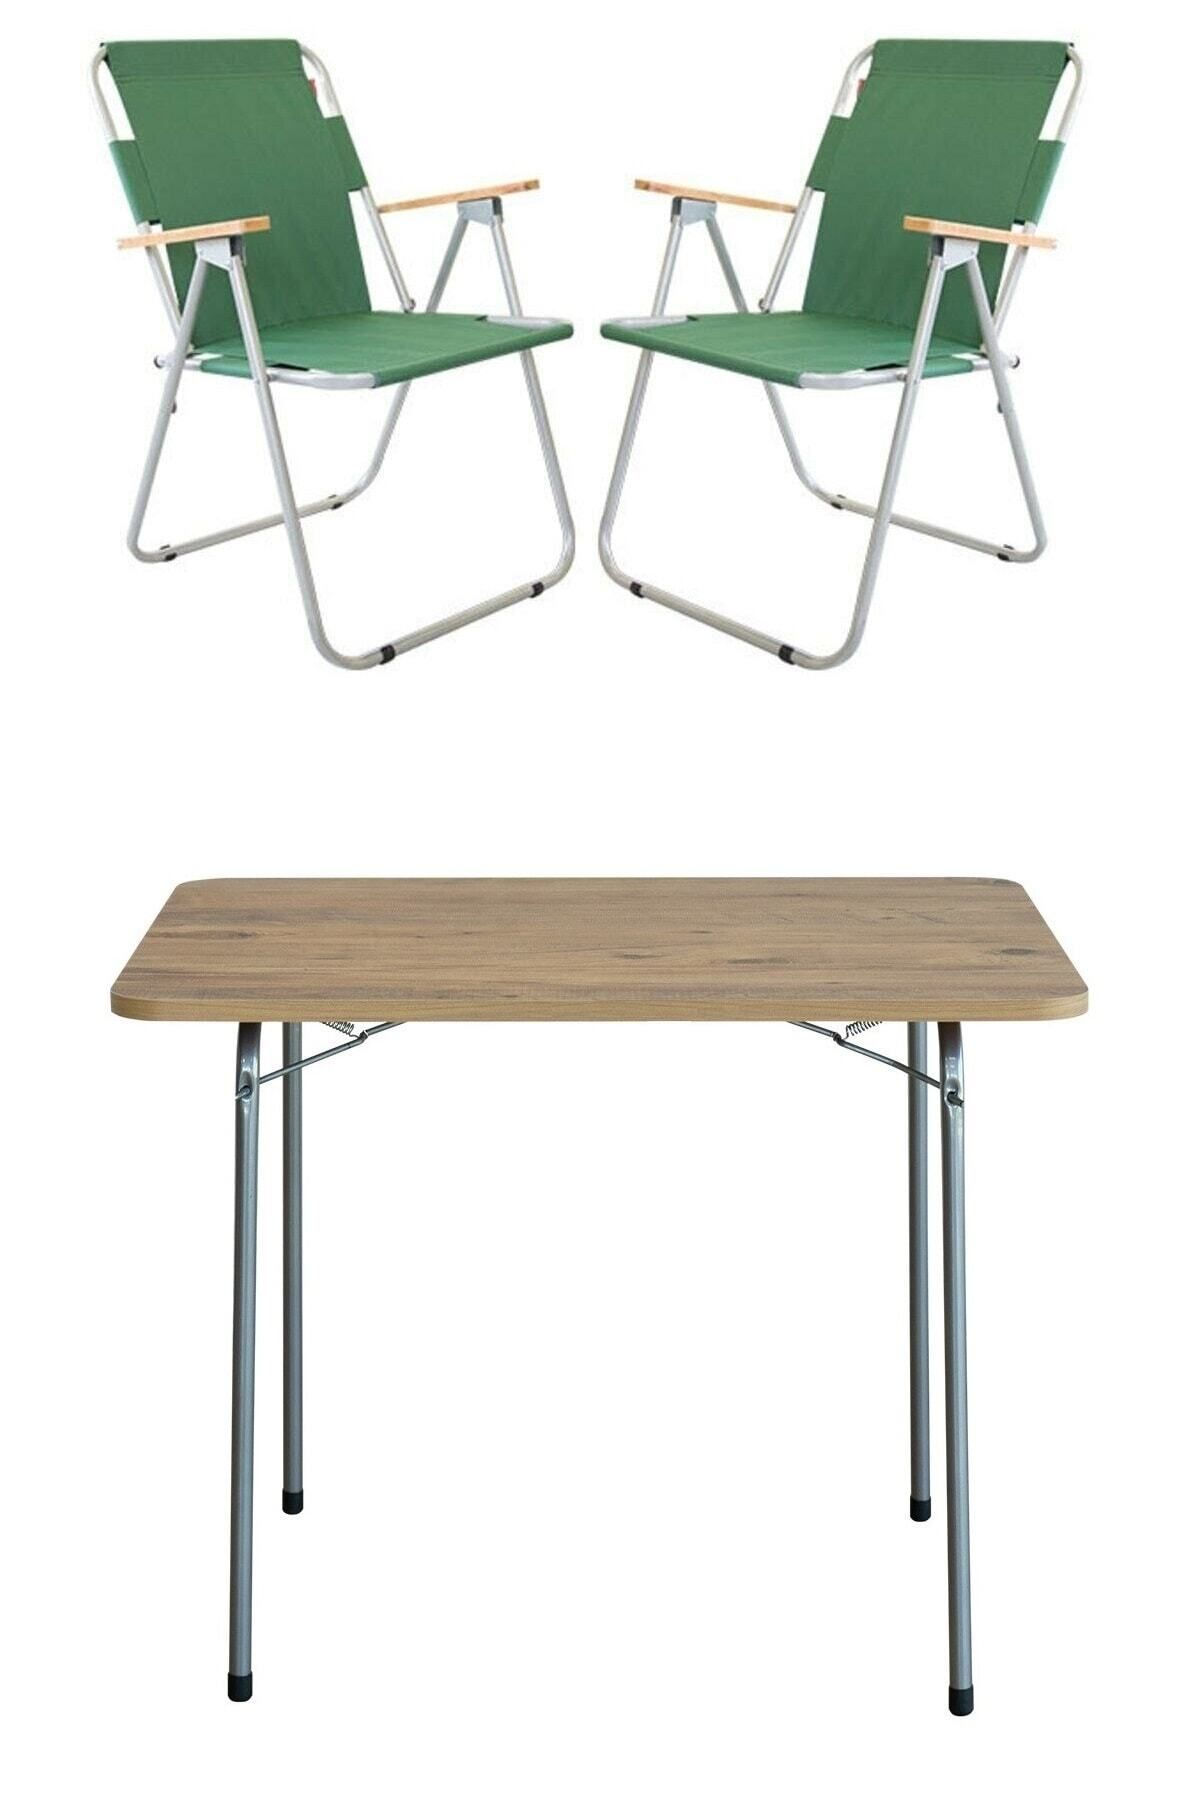 Bofigo 60x80 Çam Katlanır Masa + 2 Adet Katlanır Sandalye Kamp Seti Bahçe Balkon Takımı Yeşil